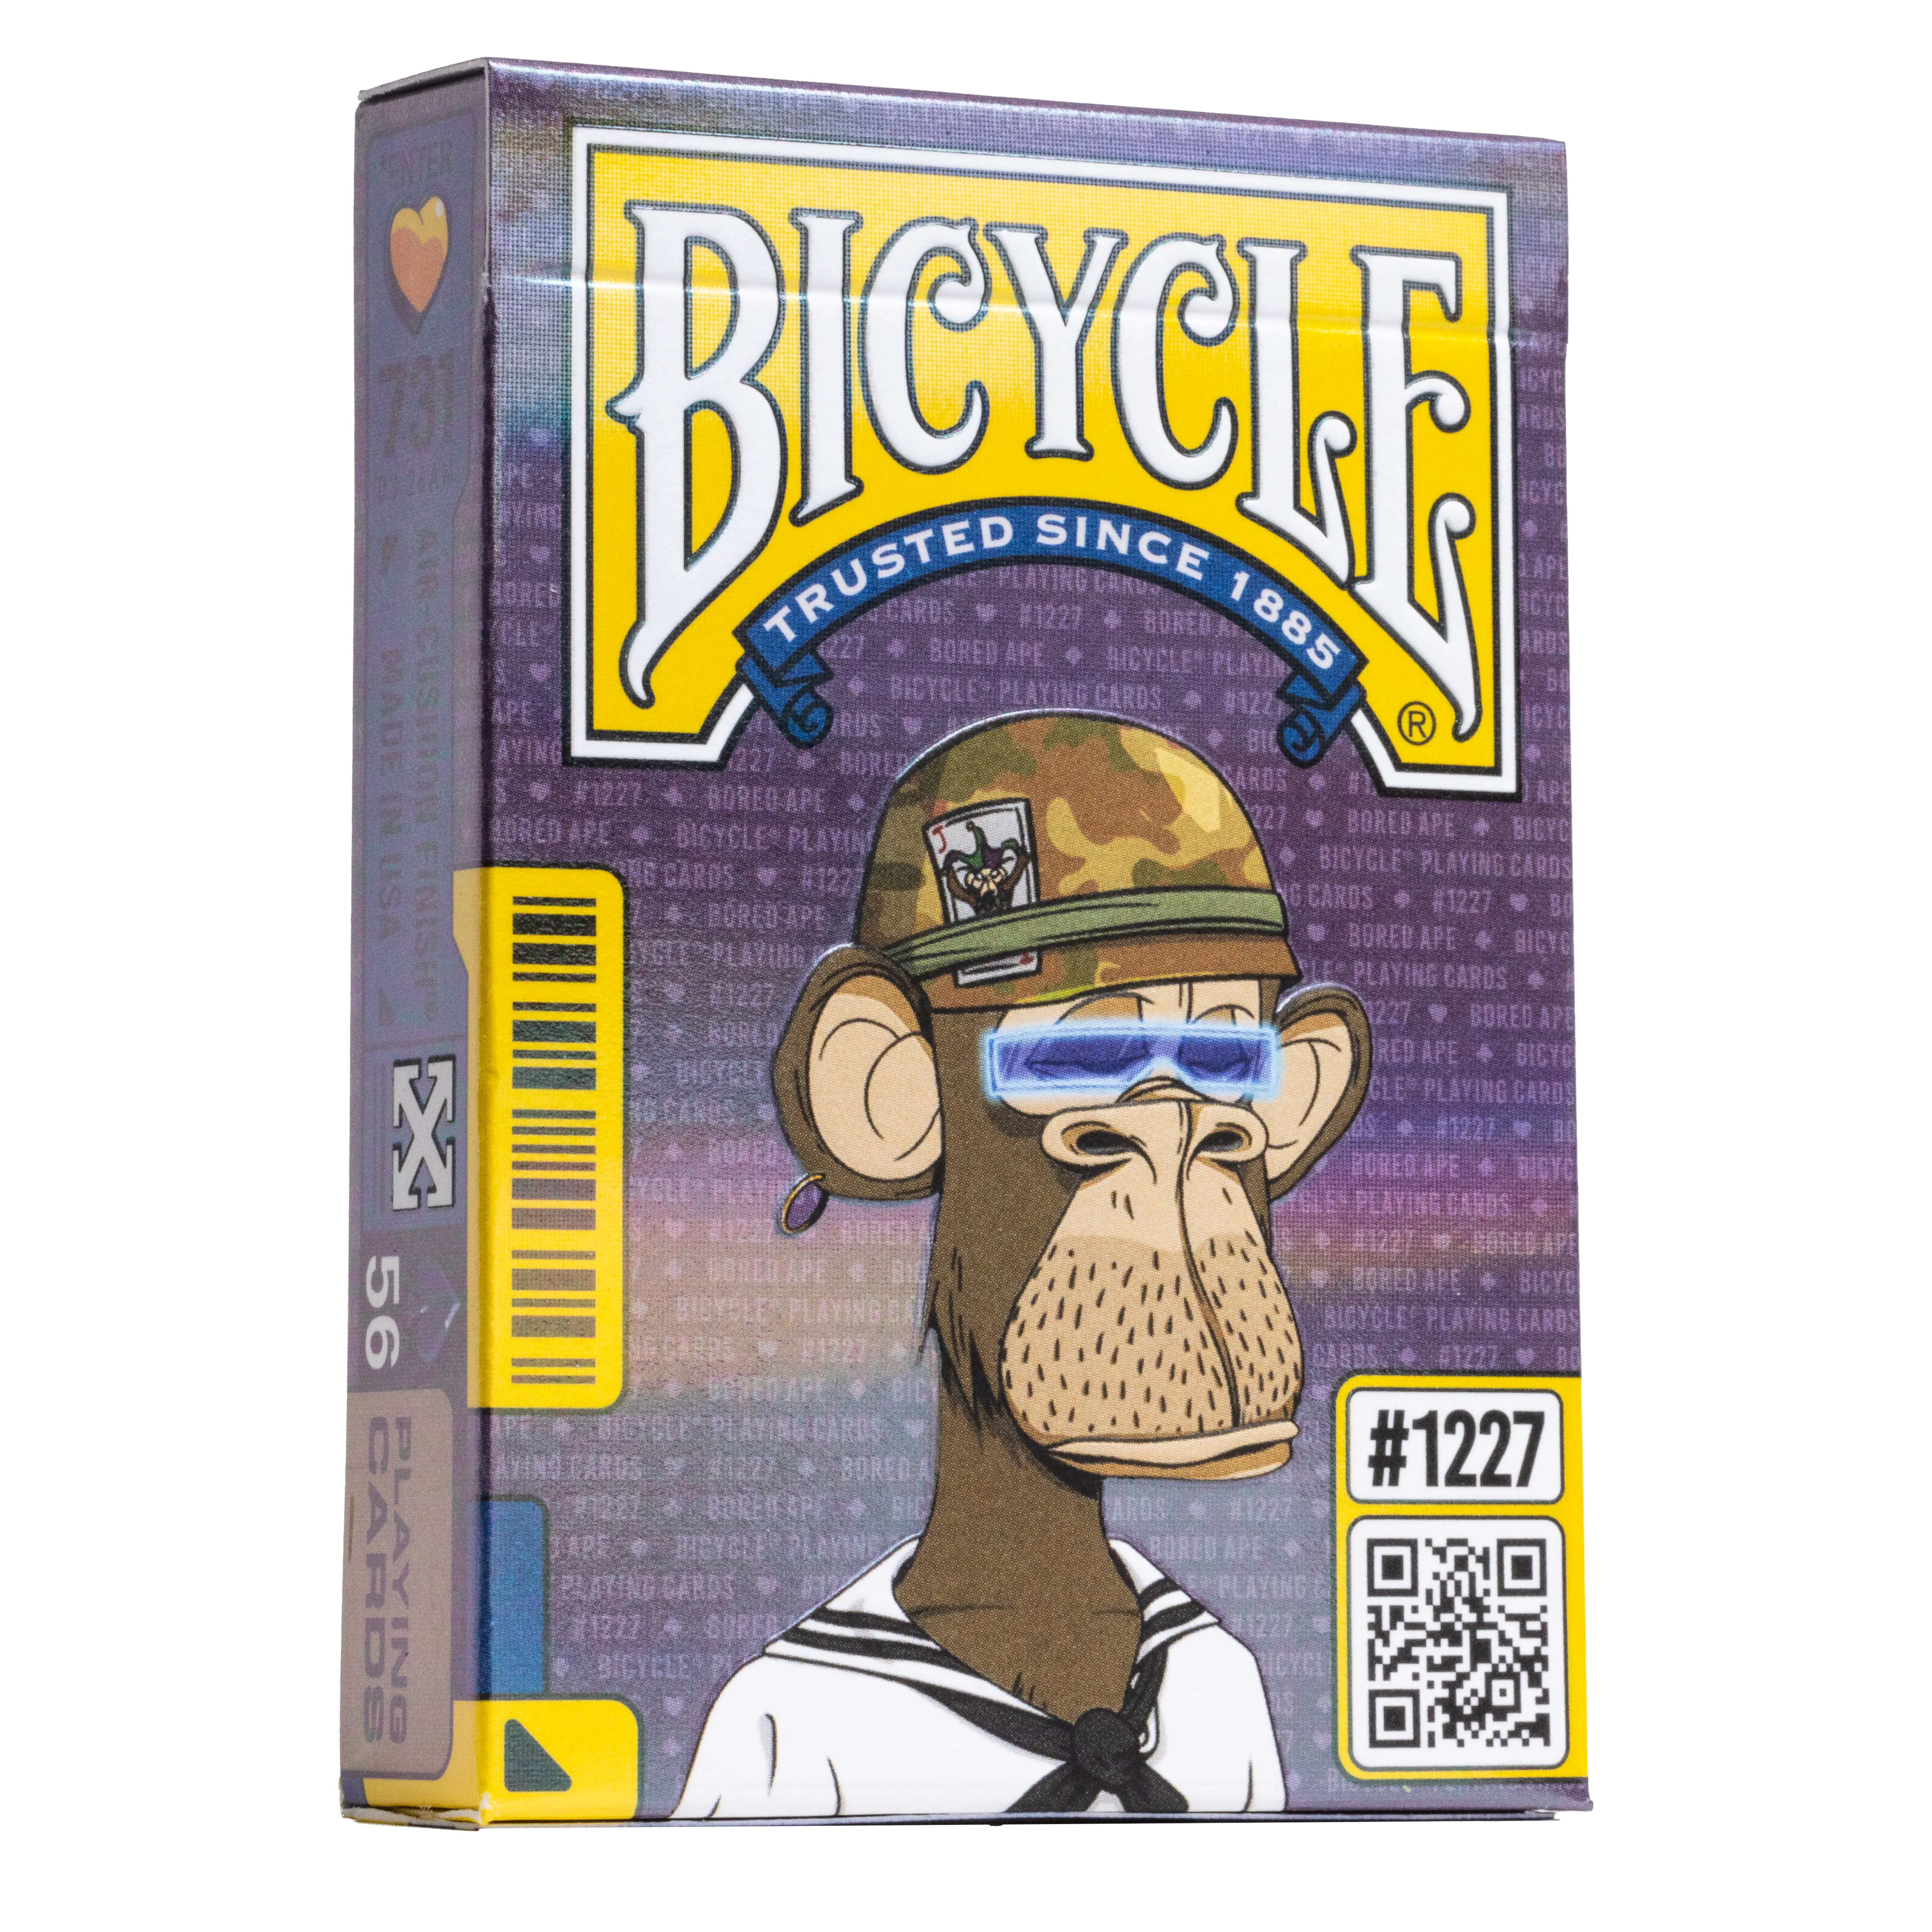 Eine Bicycle Ultimate Bicycle Bored Ape Special Edition Kartenschachtel steht mit sichtbarer Vorderseite vor einem weißem Hintergrund.